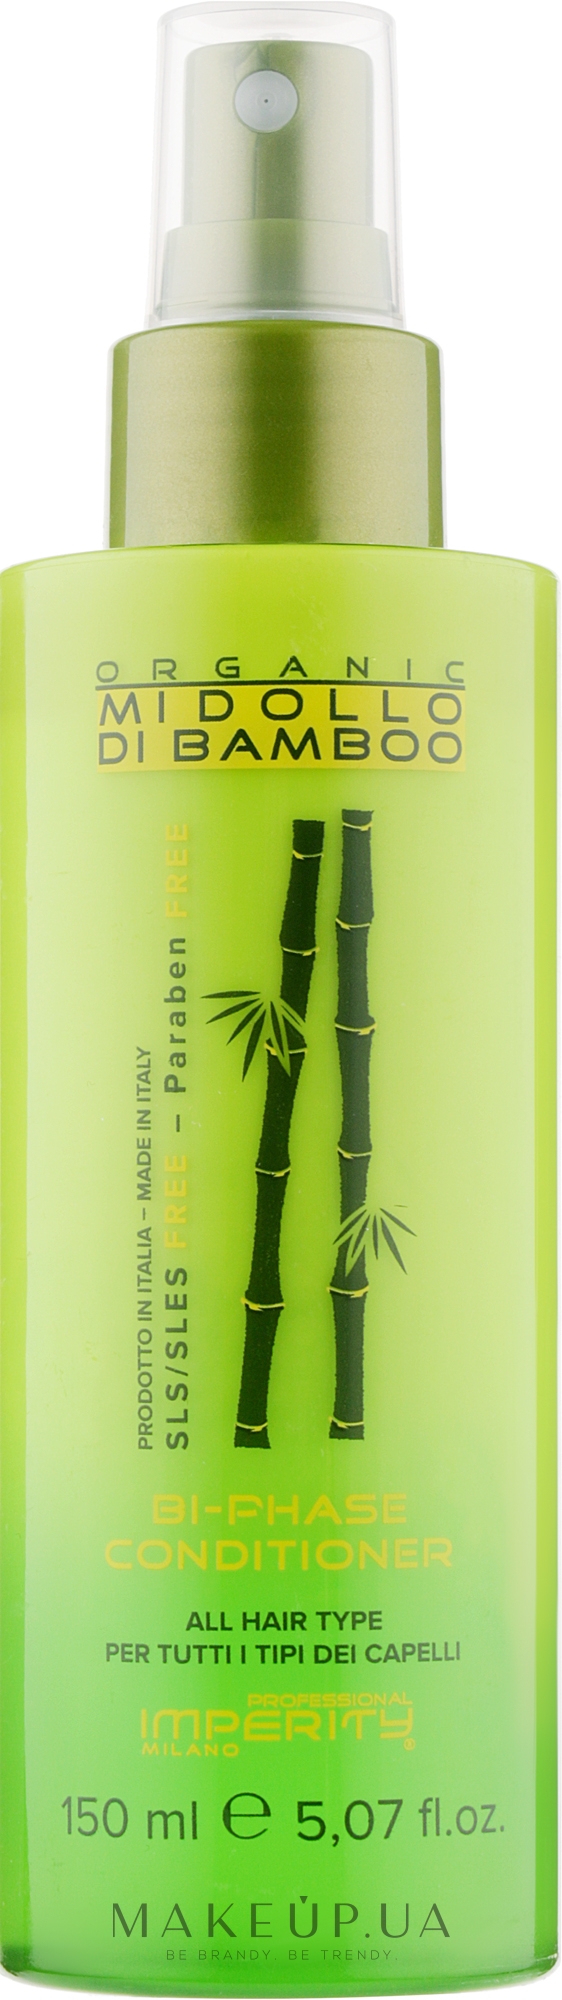 Двофазний кондиціонер-спрей для волосся - Imperity Organic Midollo di Bamboo Bi-Phase Conditioner — фото 150ml